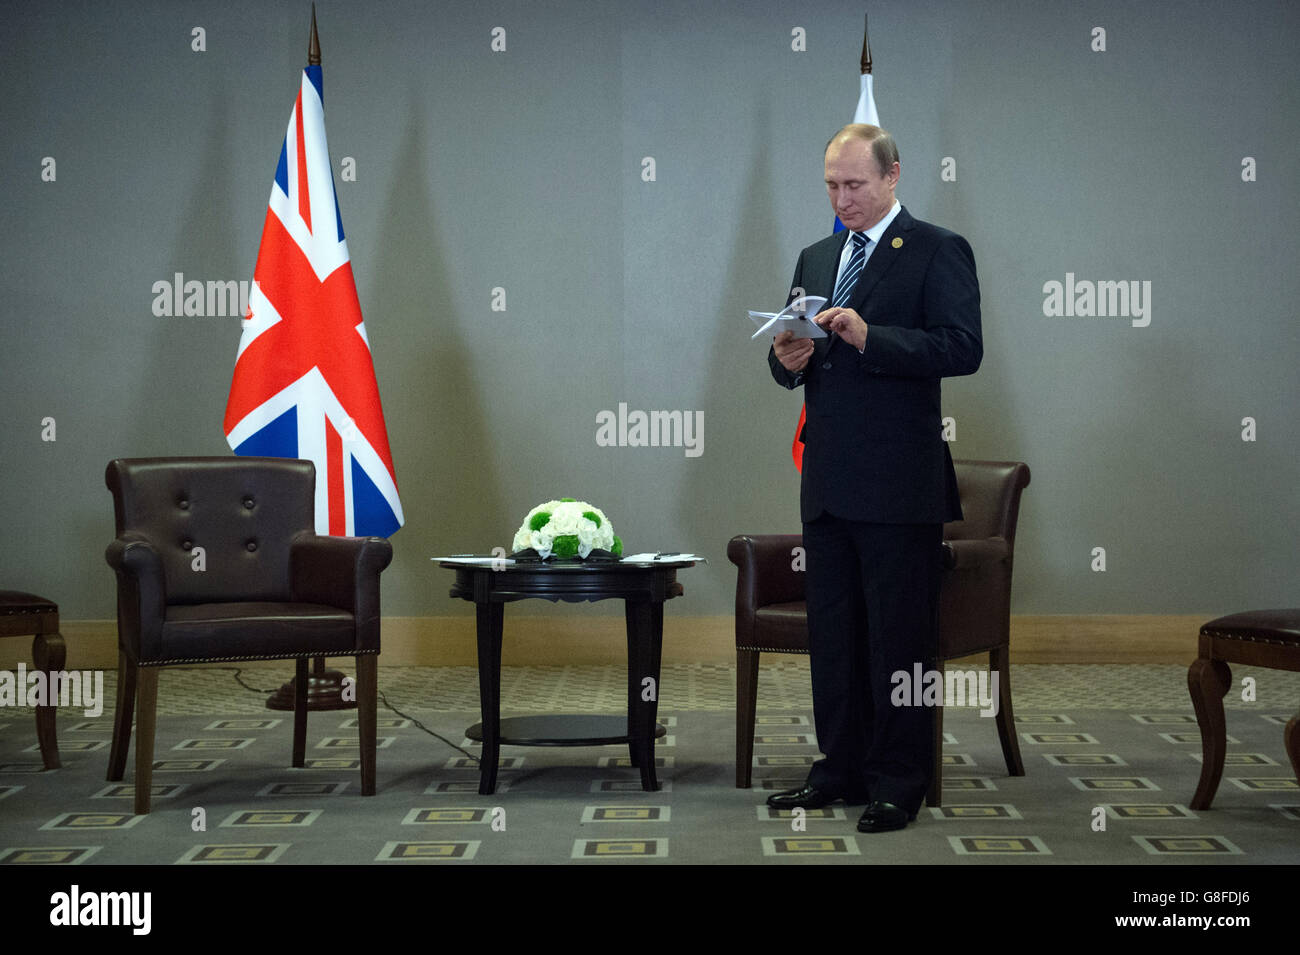 Der russische Präsident Wladimir Putin wartet auf die Ankunft von Premierminister David Cameron im Vorfeld eines Treffens beim G20-Gipfel der Staats- und Regierungschefs der Türkei in Antalya, Türkei. Stockfoto